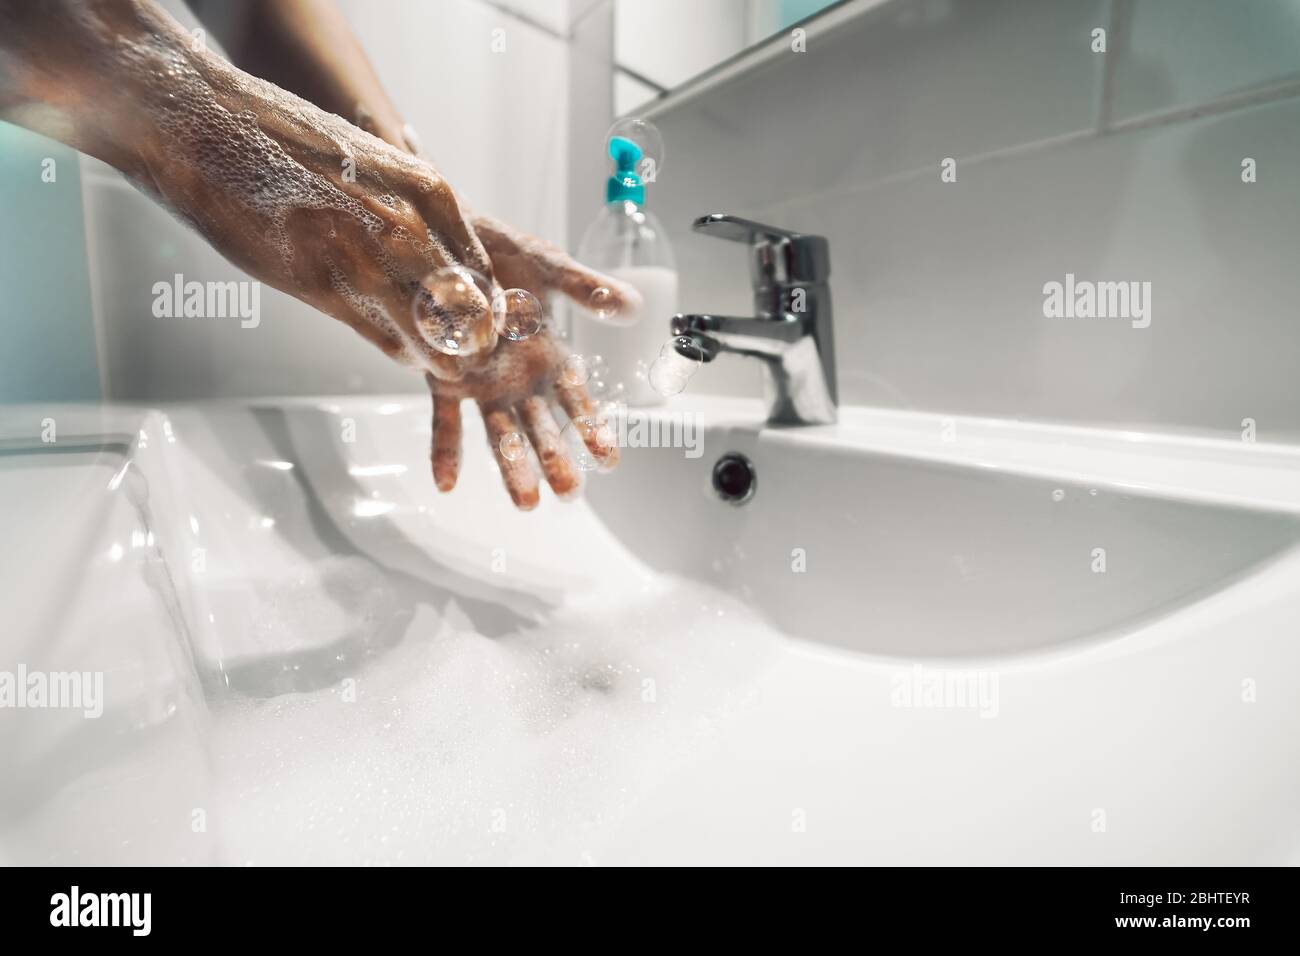 Les femmes se lavent les mains avec du savon liquide pour prévenir et arrêter la propagation du virus corona - concept d'hygiène et de santé Banque D'Images